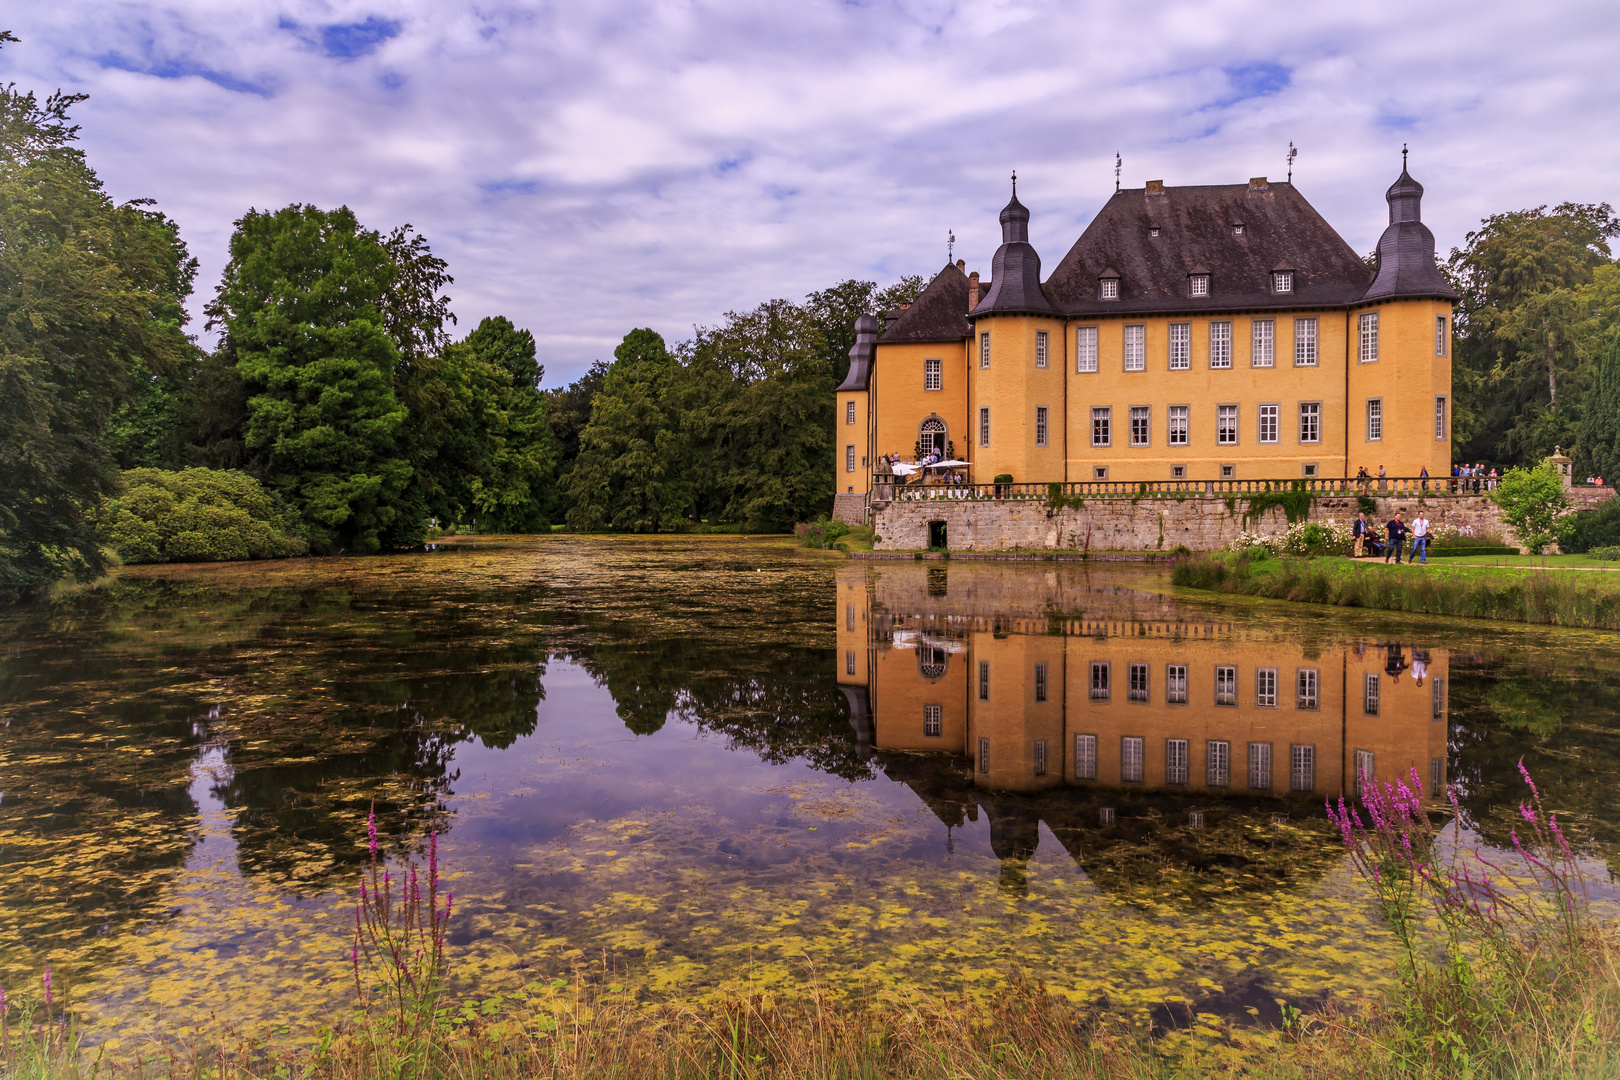 "Schloss Dyck"